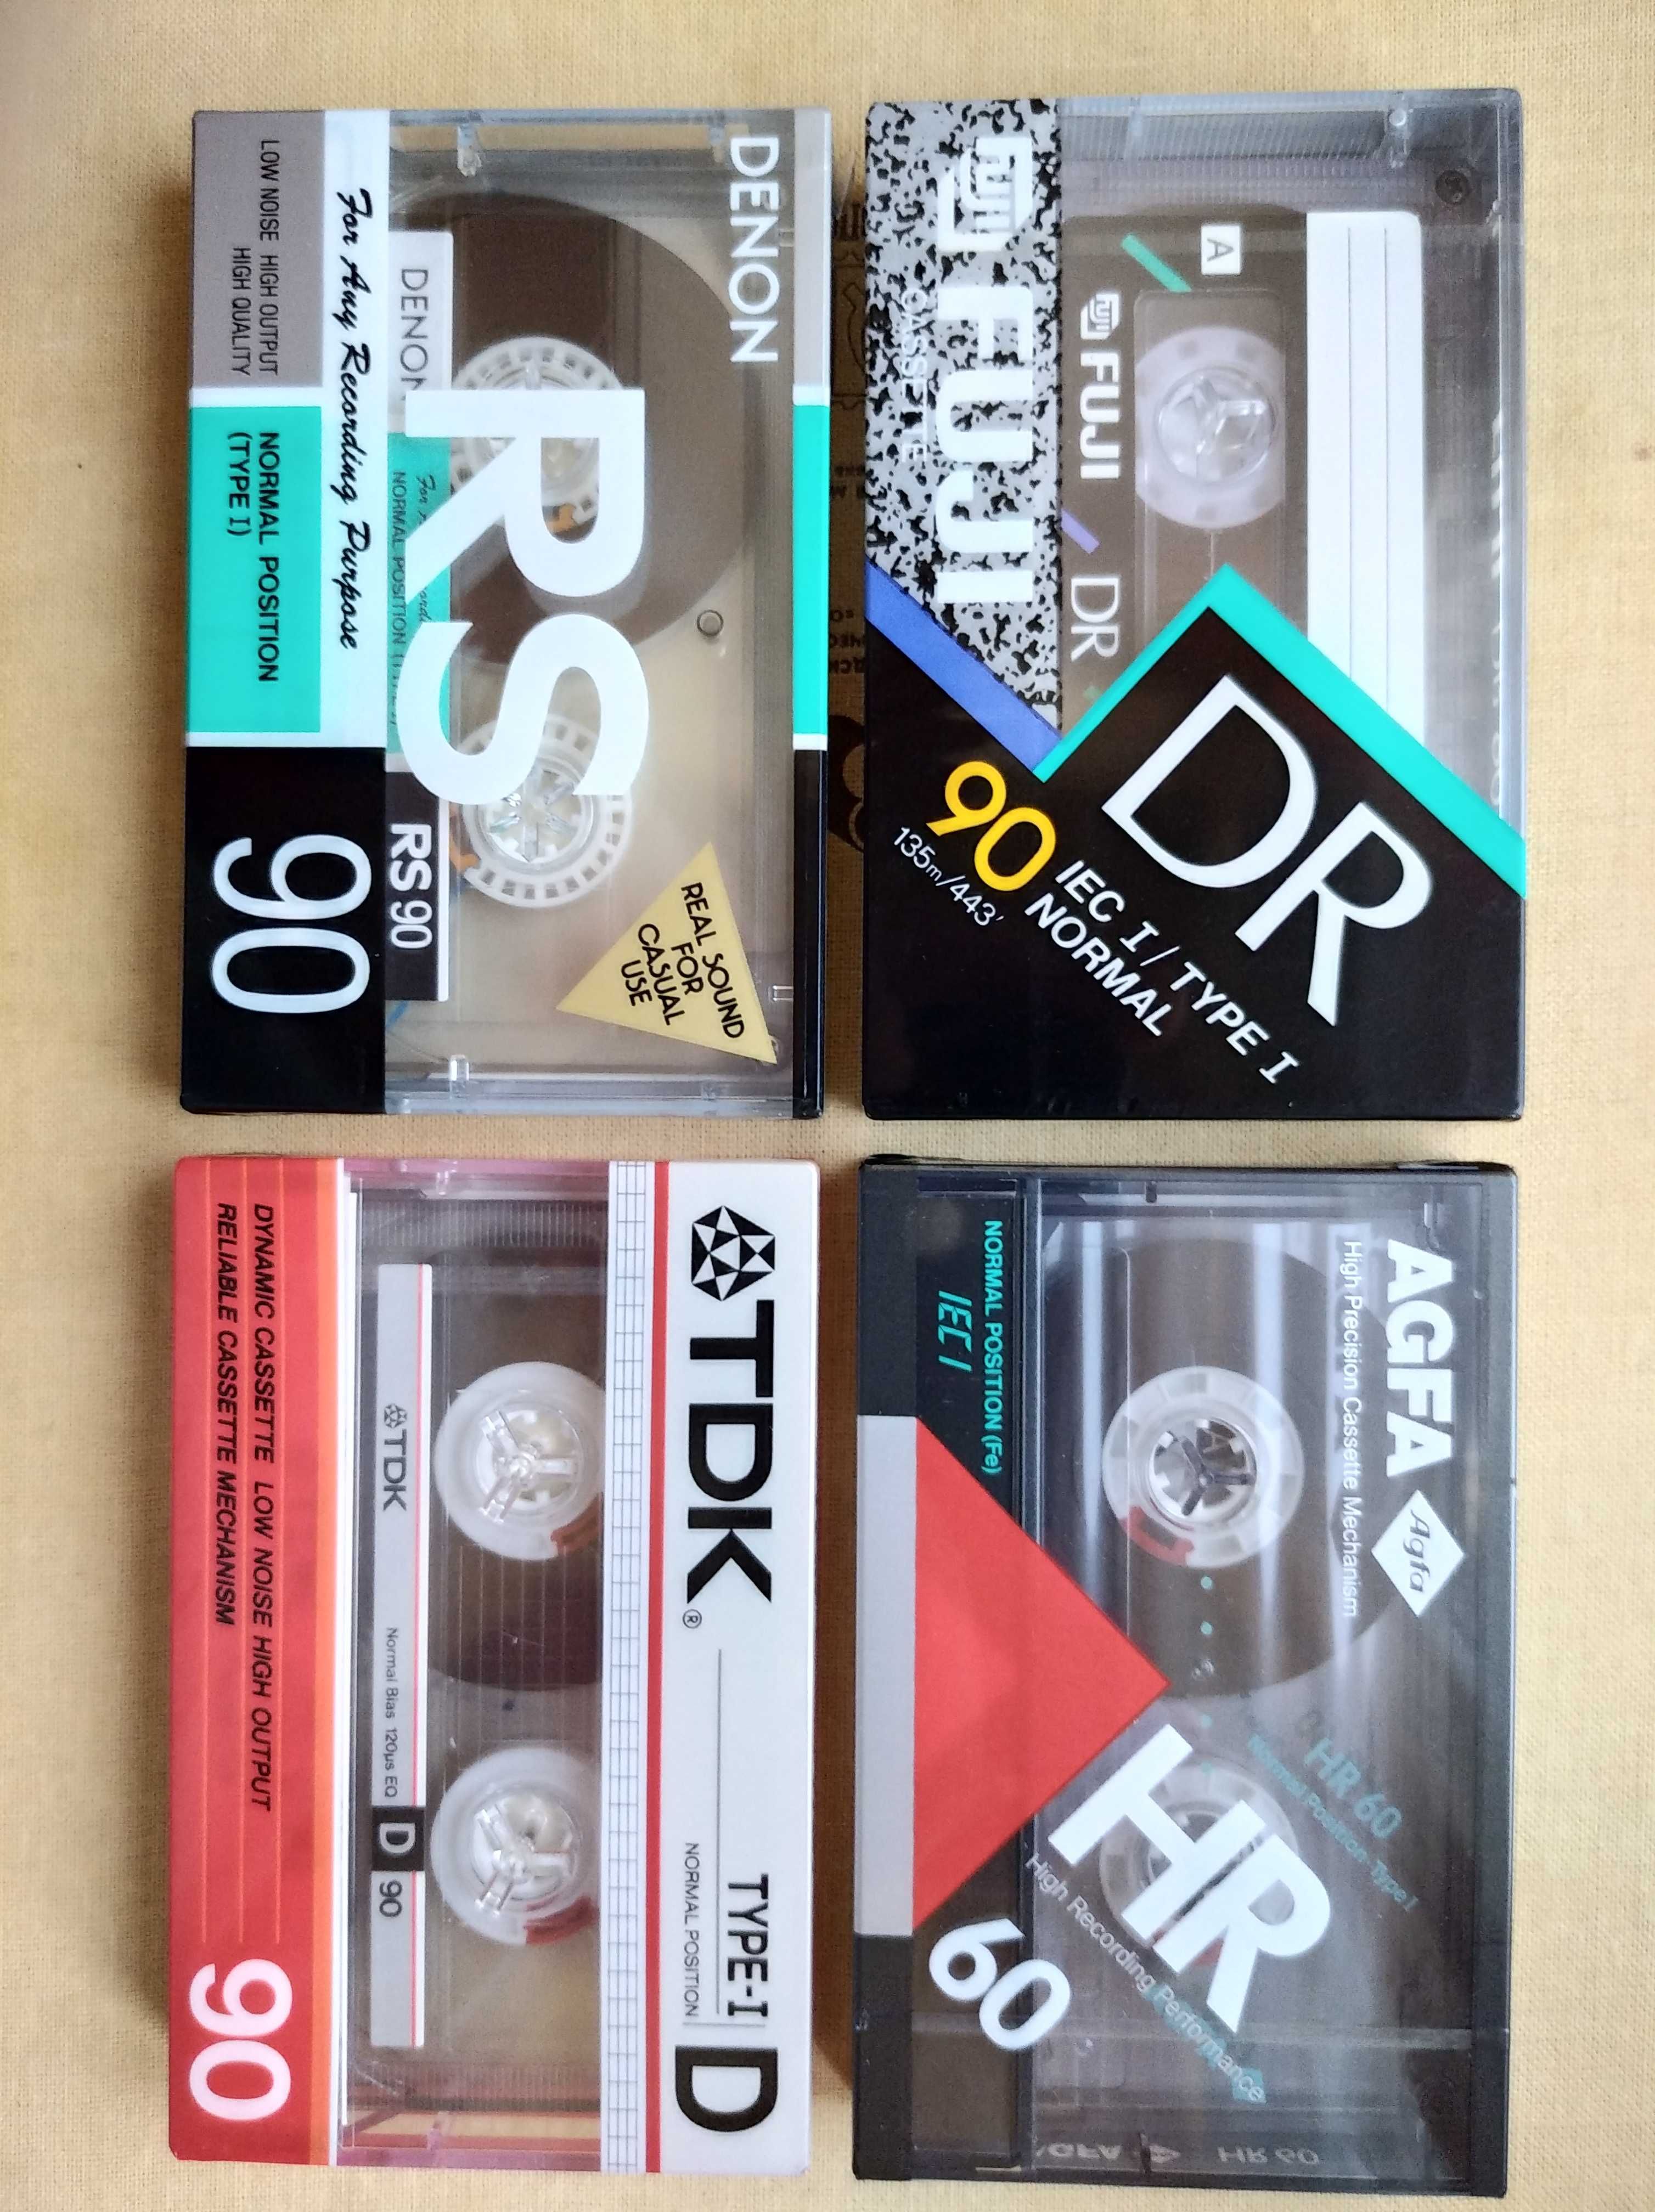 Аудиокассеты из собственной коллекции.